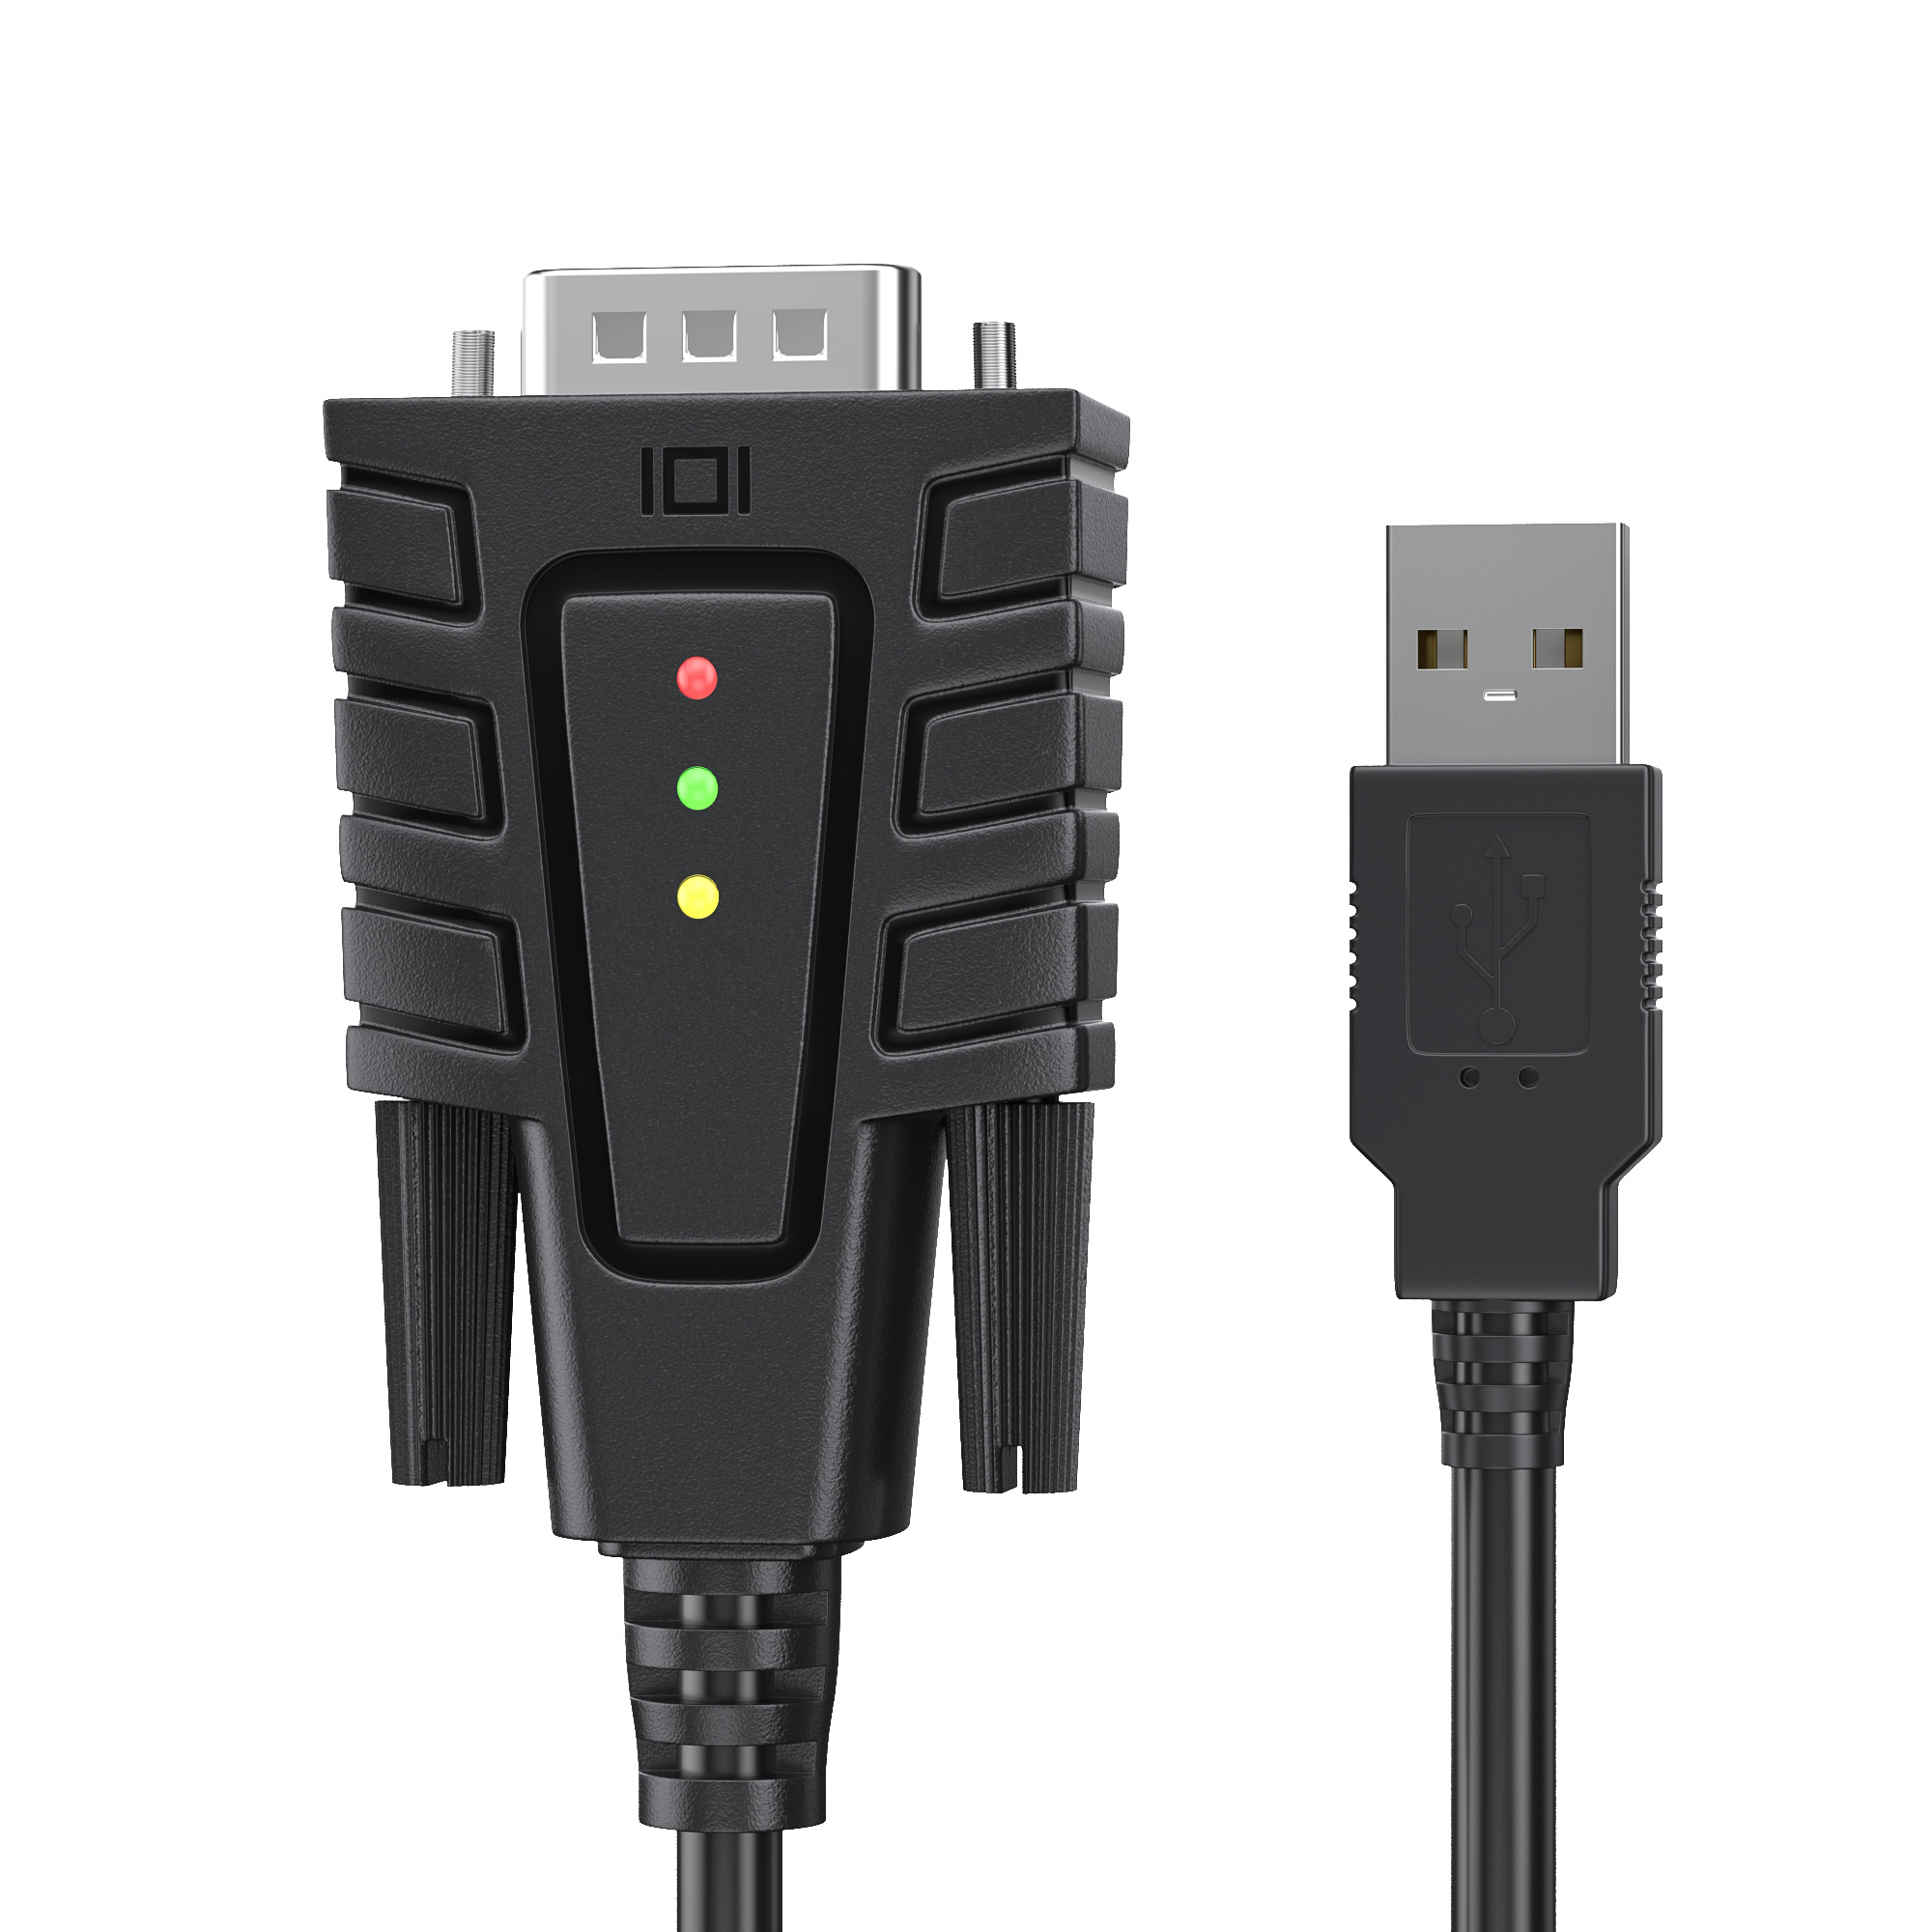 USB232A-B-A | Адаптер USB к серийному порту с 3 светодиодами индикации